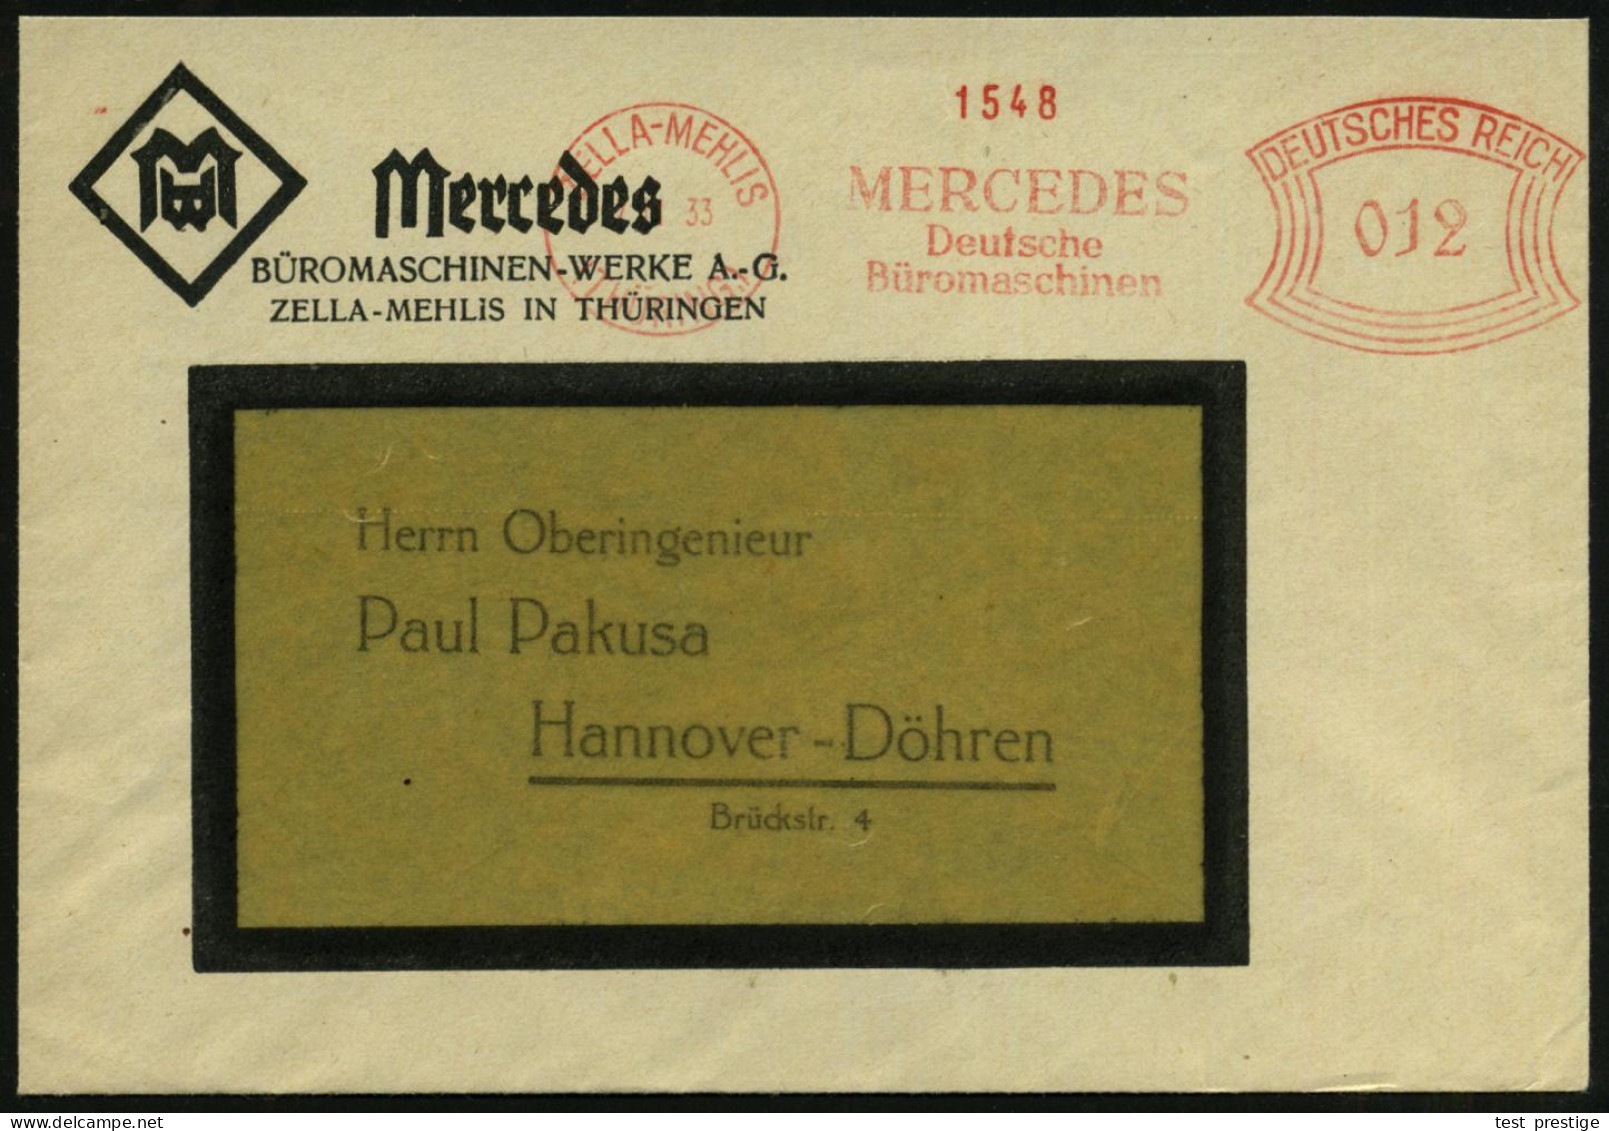 ZELLA-MEHLIS/ (THÜRING:)/ MERCEDES/ Deutsche/ Büromaschinen 1933 (2.11.) AFS  Francotyp Auf Firmen-Bf.: Mercedes BÜROMAS - Informatique